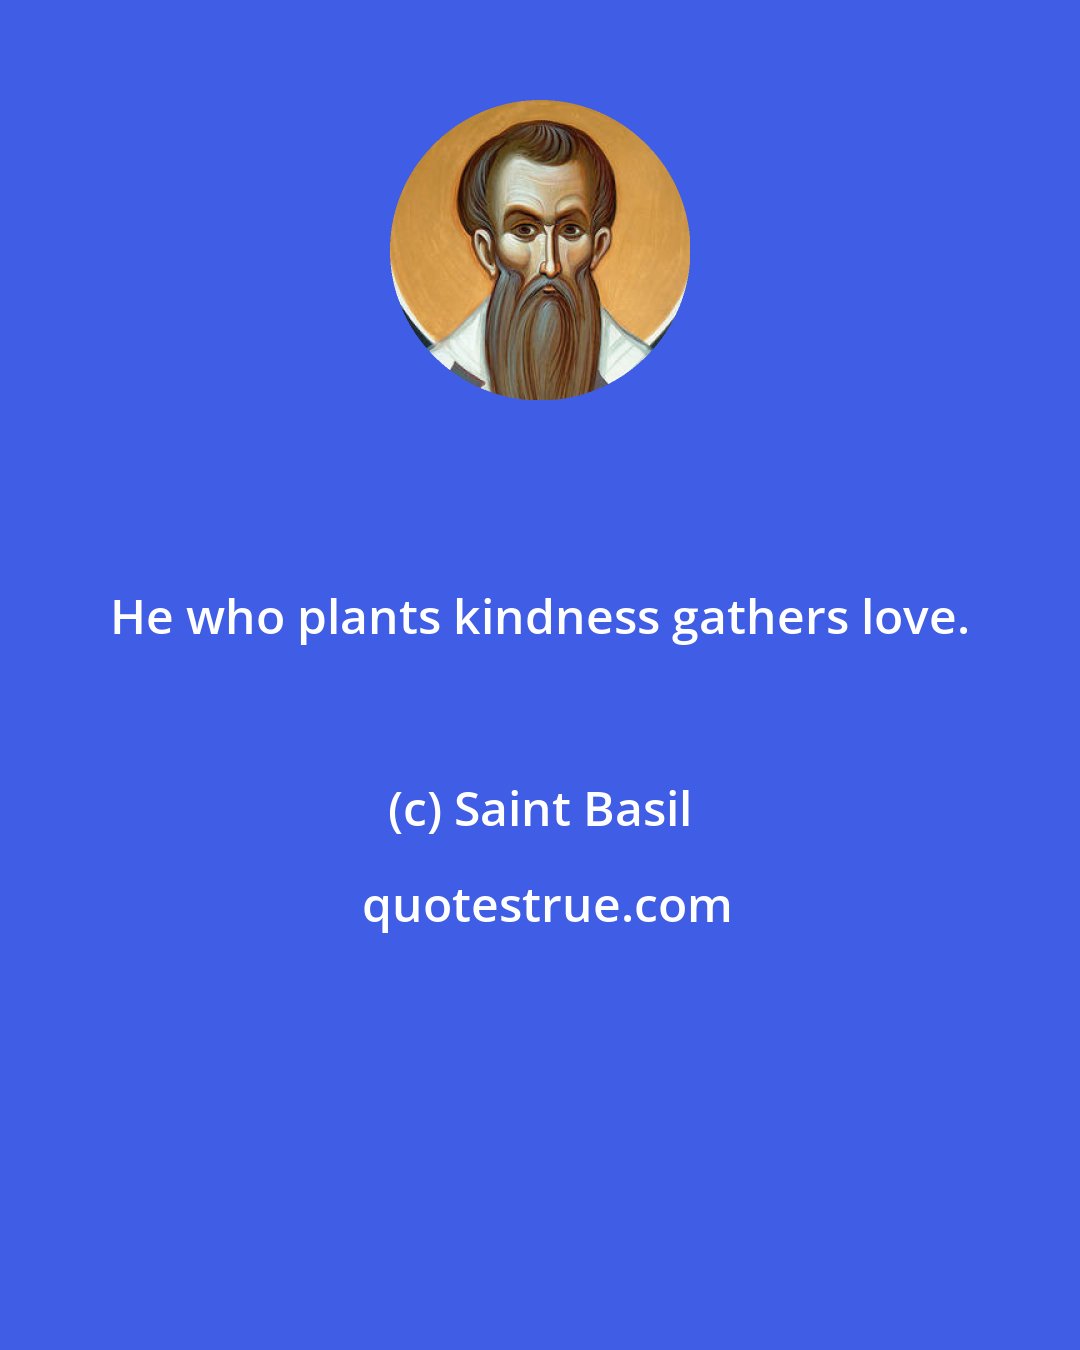 Saint Basil: He who plants kindness gathers love.